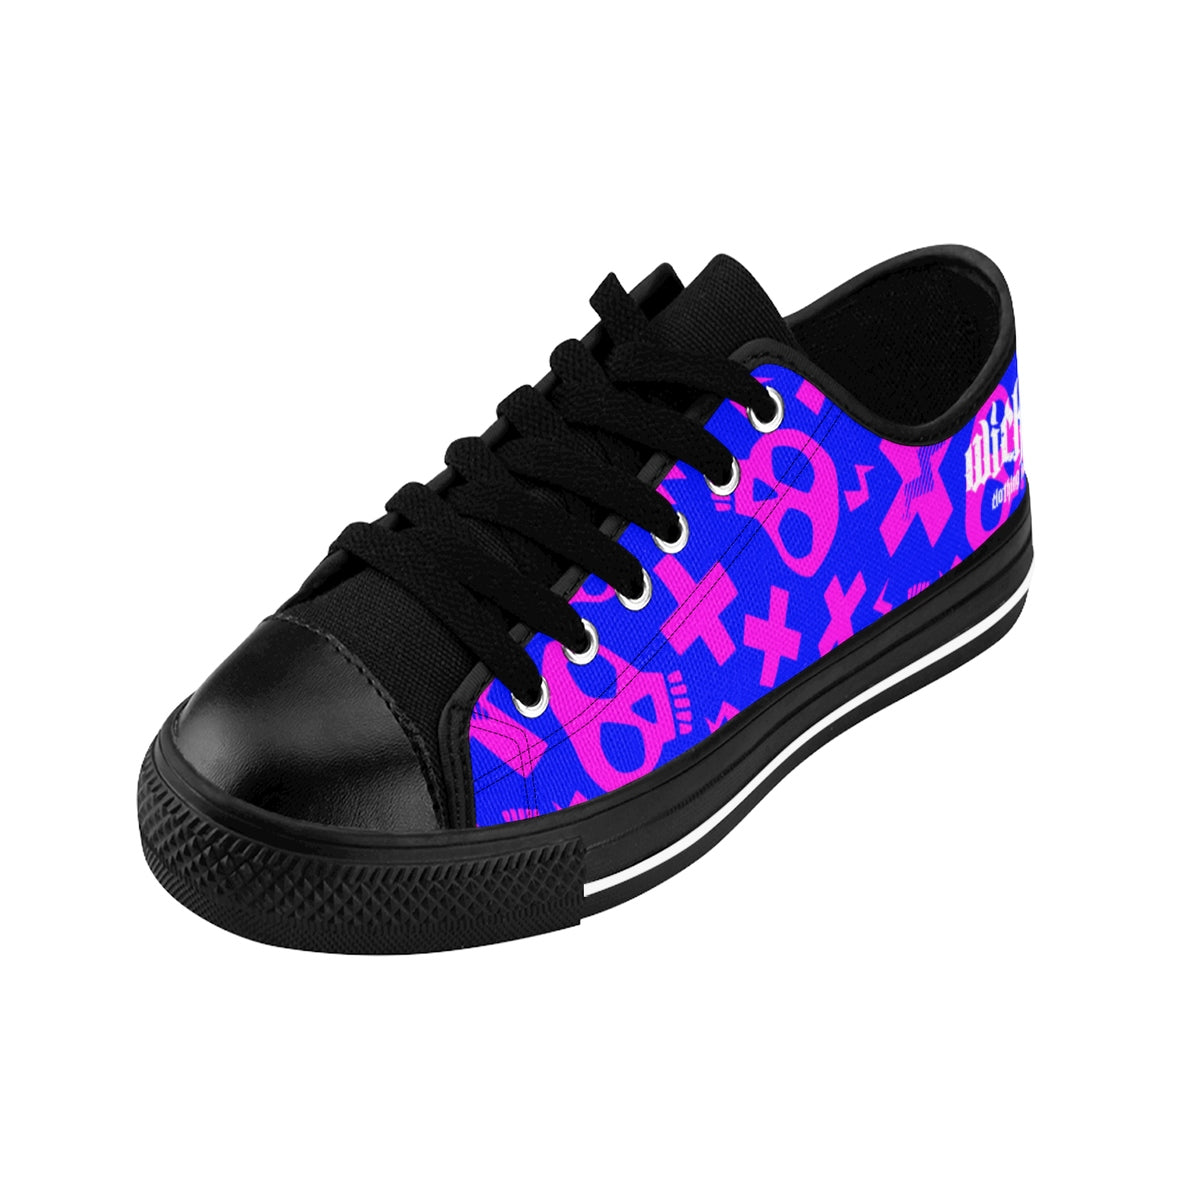 Crazy Skulls II/Pink and Blue/ Women's Sneakers